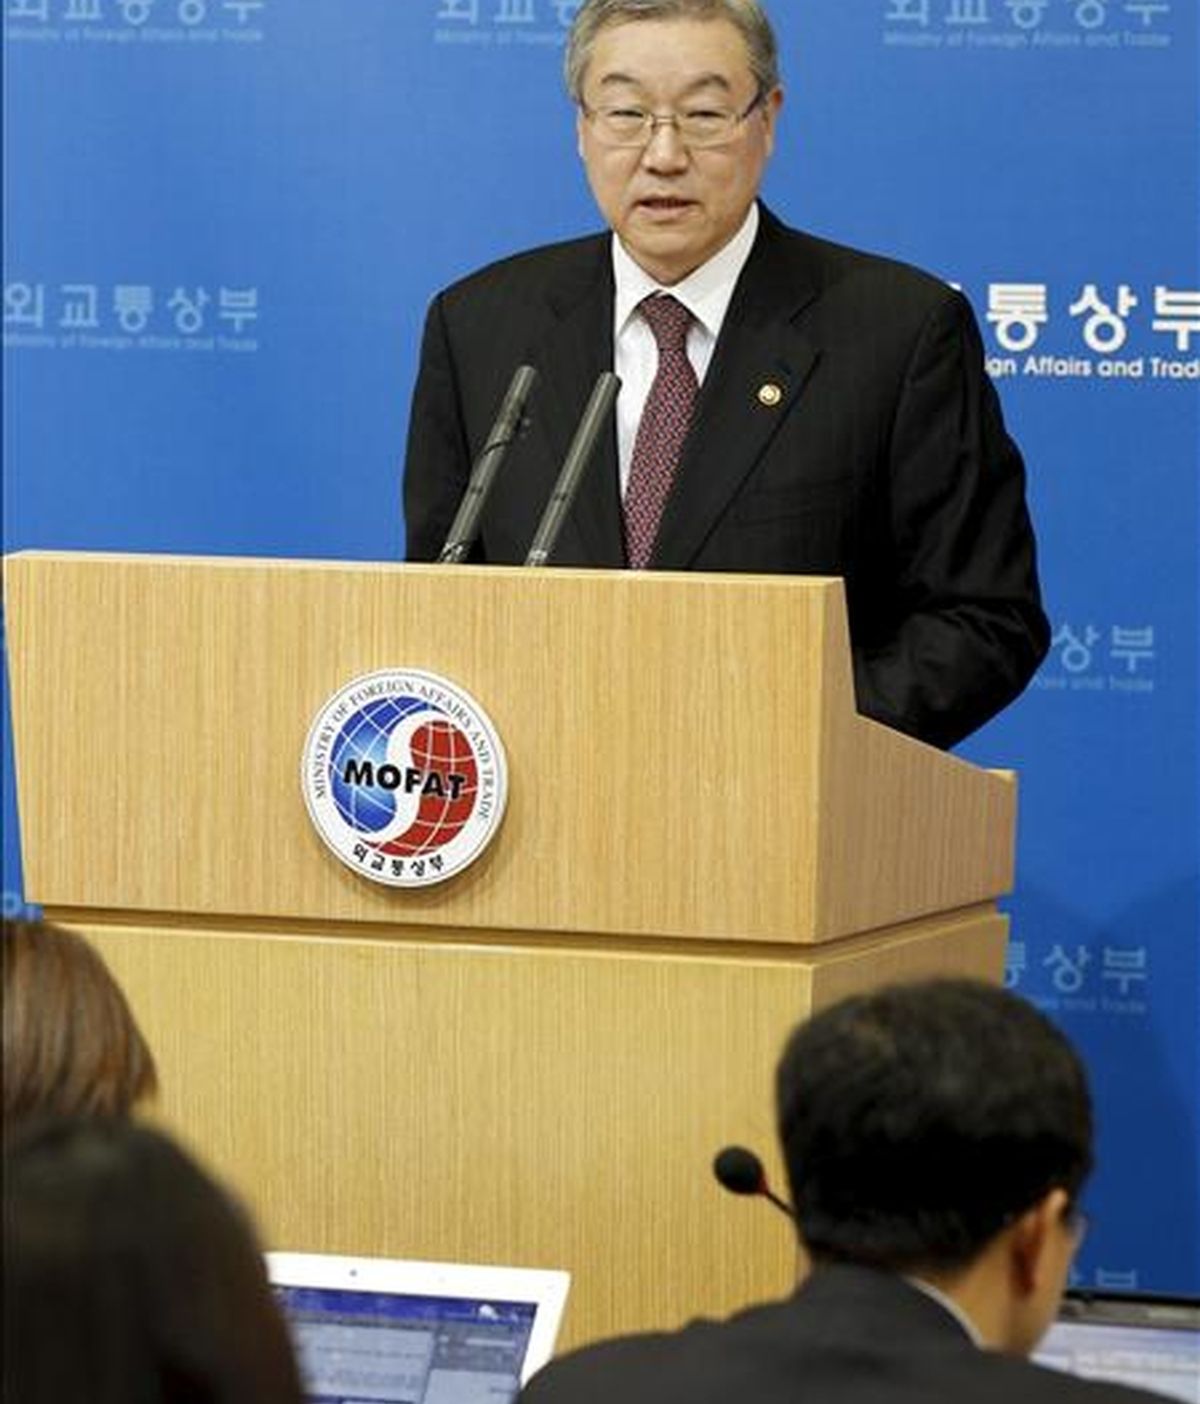 El ministro del Exterior surcoreano, Kim Sung-hwan, convoca una rueda de prensa para informar de las conversaciones entre los seis partidos en materia nuclear, en Seúl (Corea del Sur), hoy, martes, 14 de diciembre de 2010. EFE